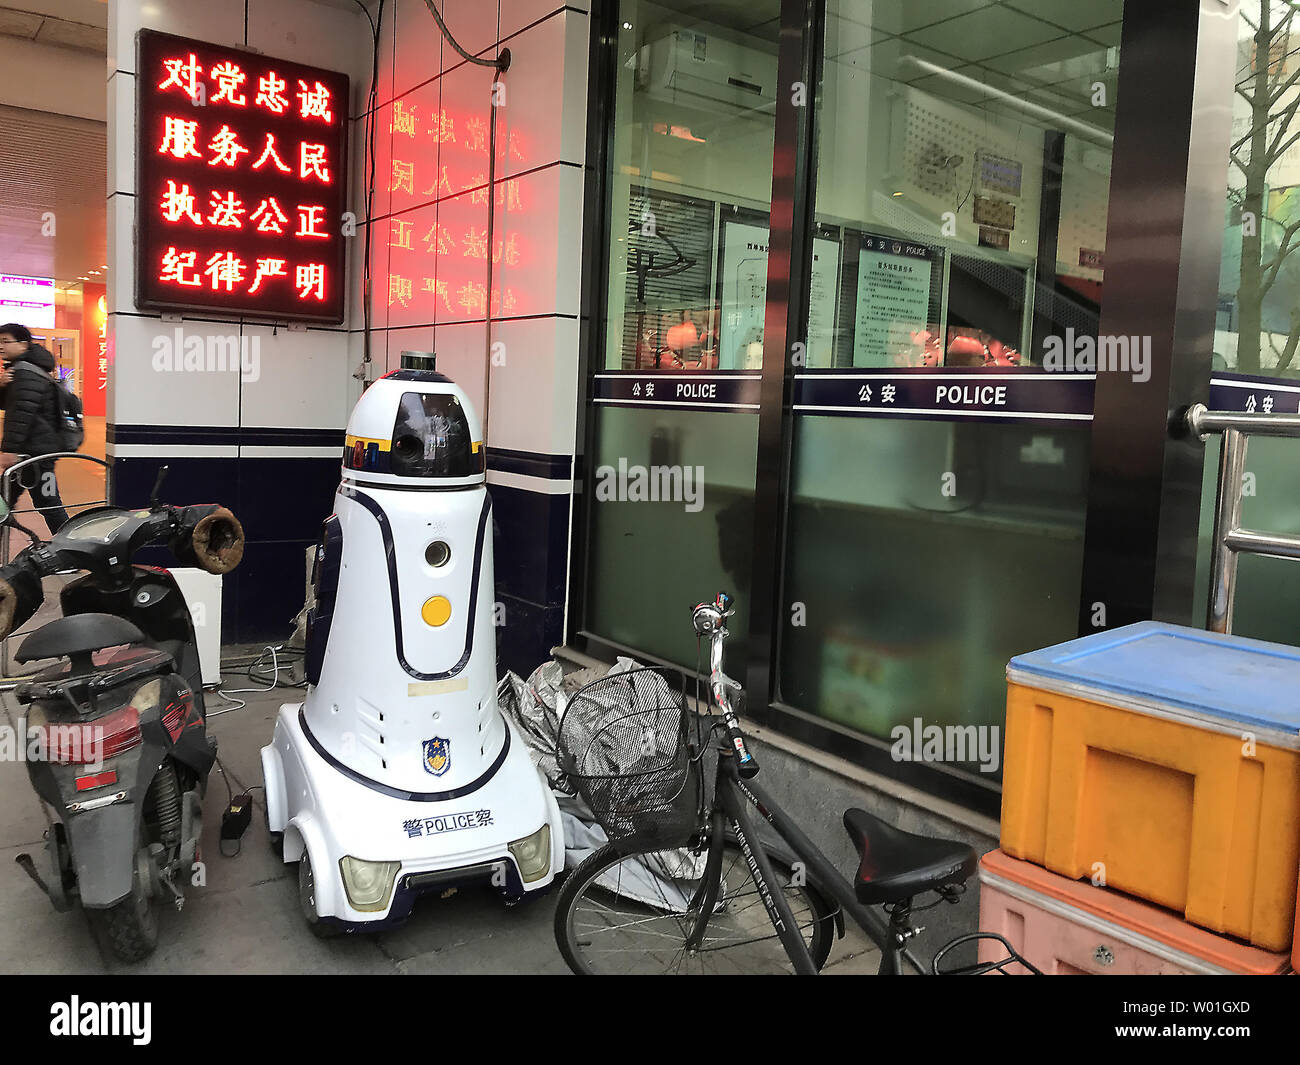 Eine polizeiliche Überwachung Roboter erhält eine Gebühr in Peking am 27. Februar 2019. Die Hauptstadt Chinas ist ratcheting Sicherheit in touristischen und Einkaufsmöglichkeiten als Führer der Regierung sind aufgrund der jährlichen Kongress in der nächsten Woche zu halten. Foto von Stephen Rasierer/UPI Stockfoto